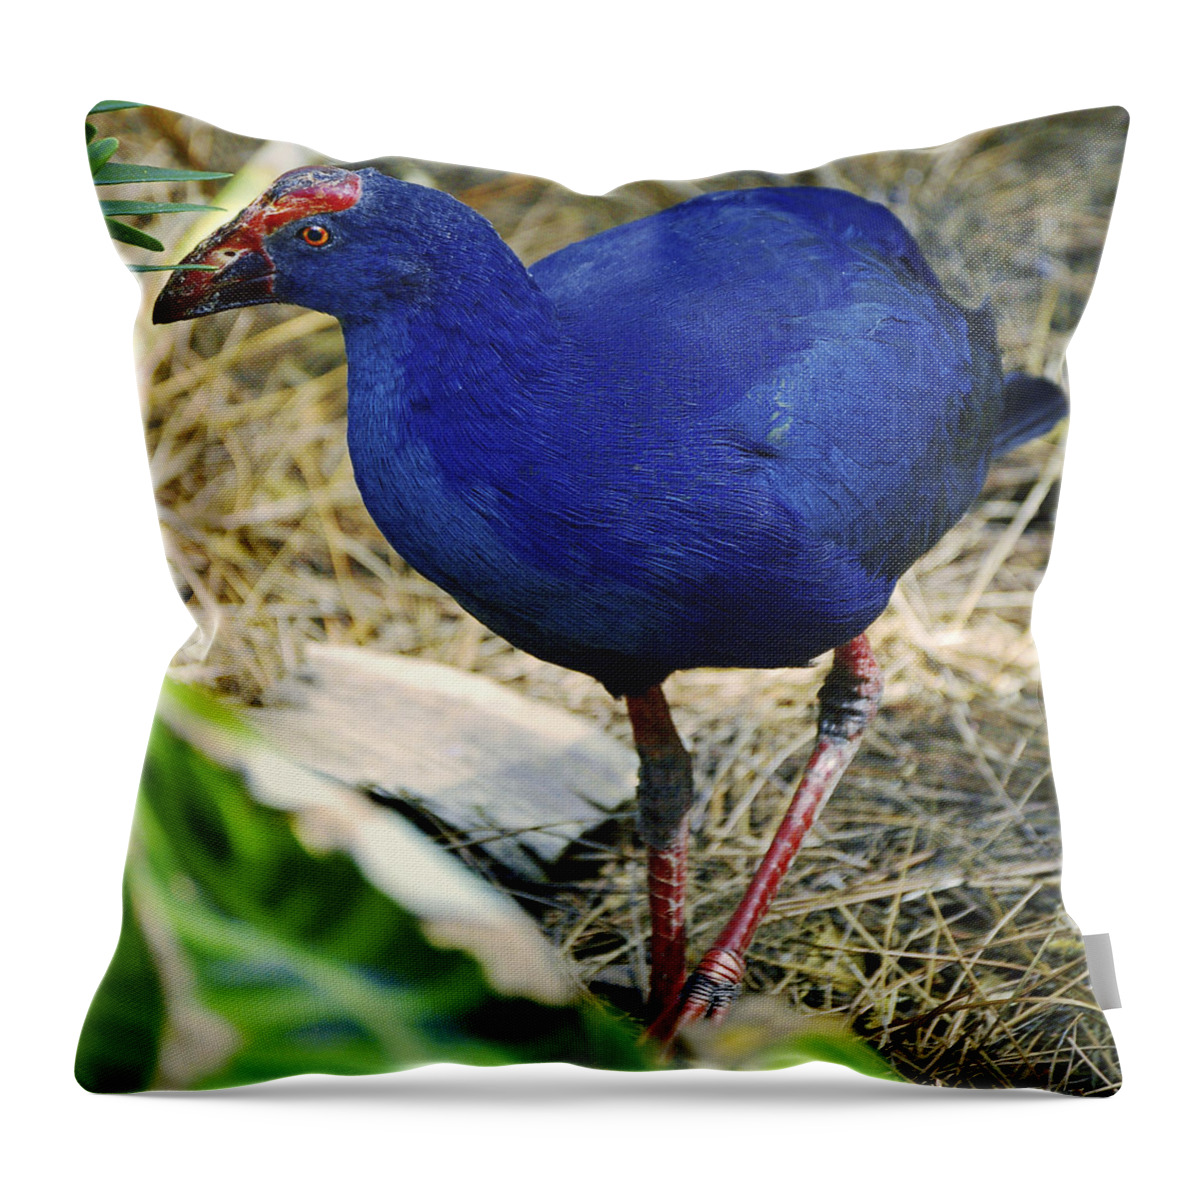 Bird Throw Pillow featuring the photograph Australian Swamp Hen by Donna Proctor